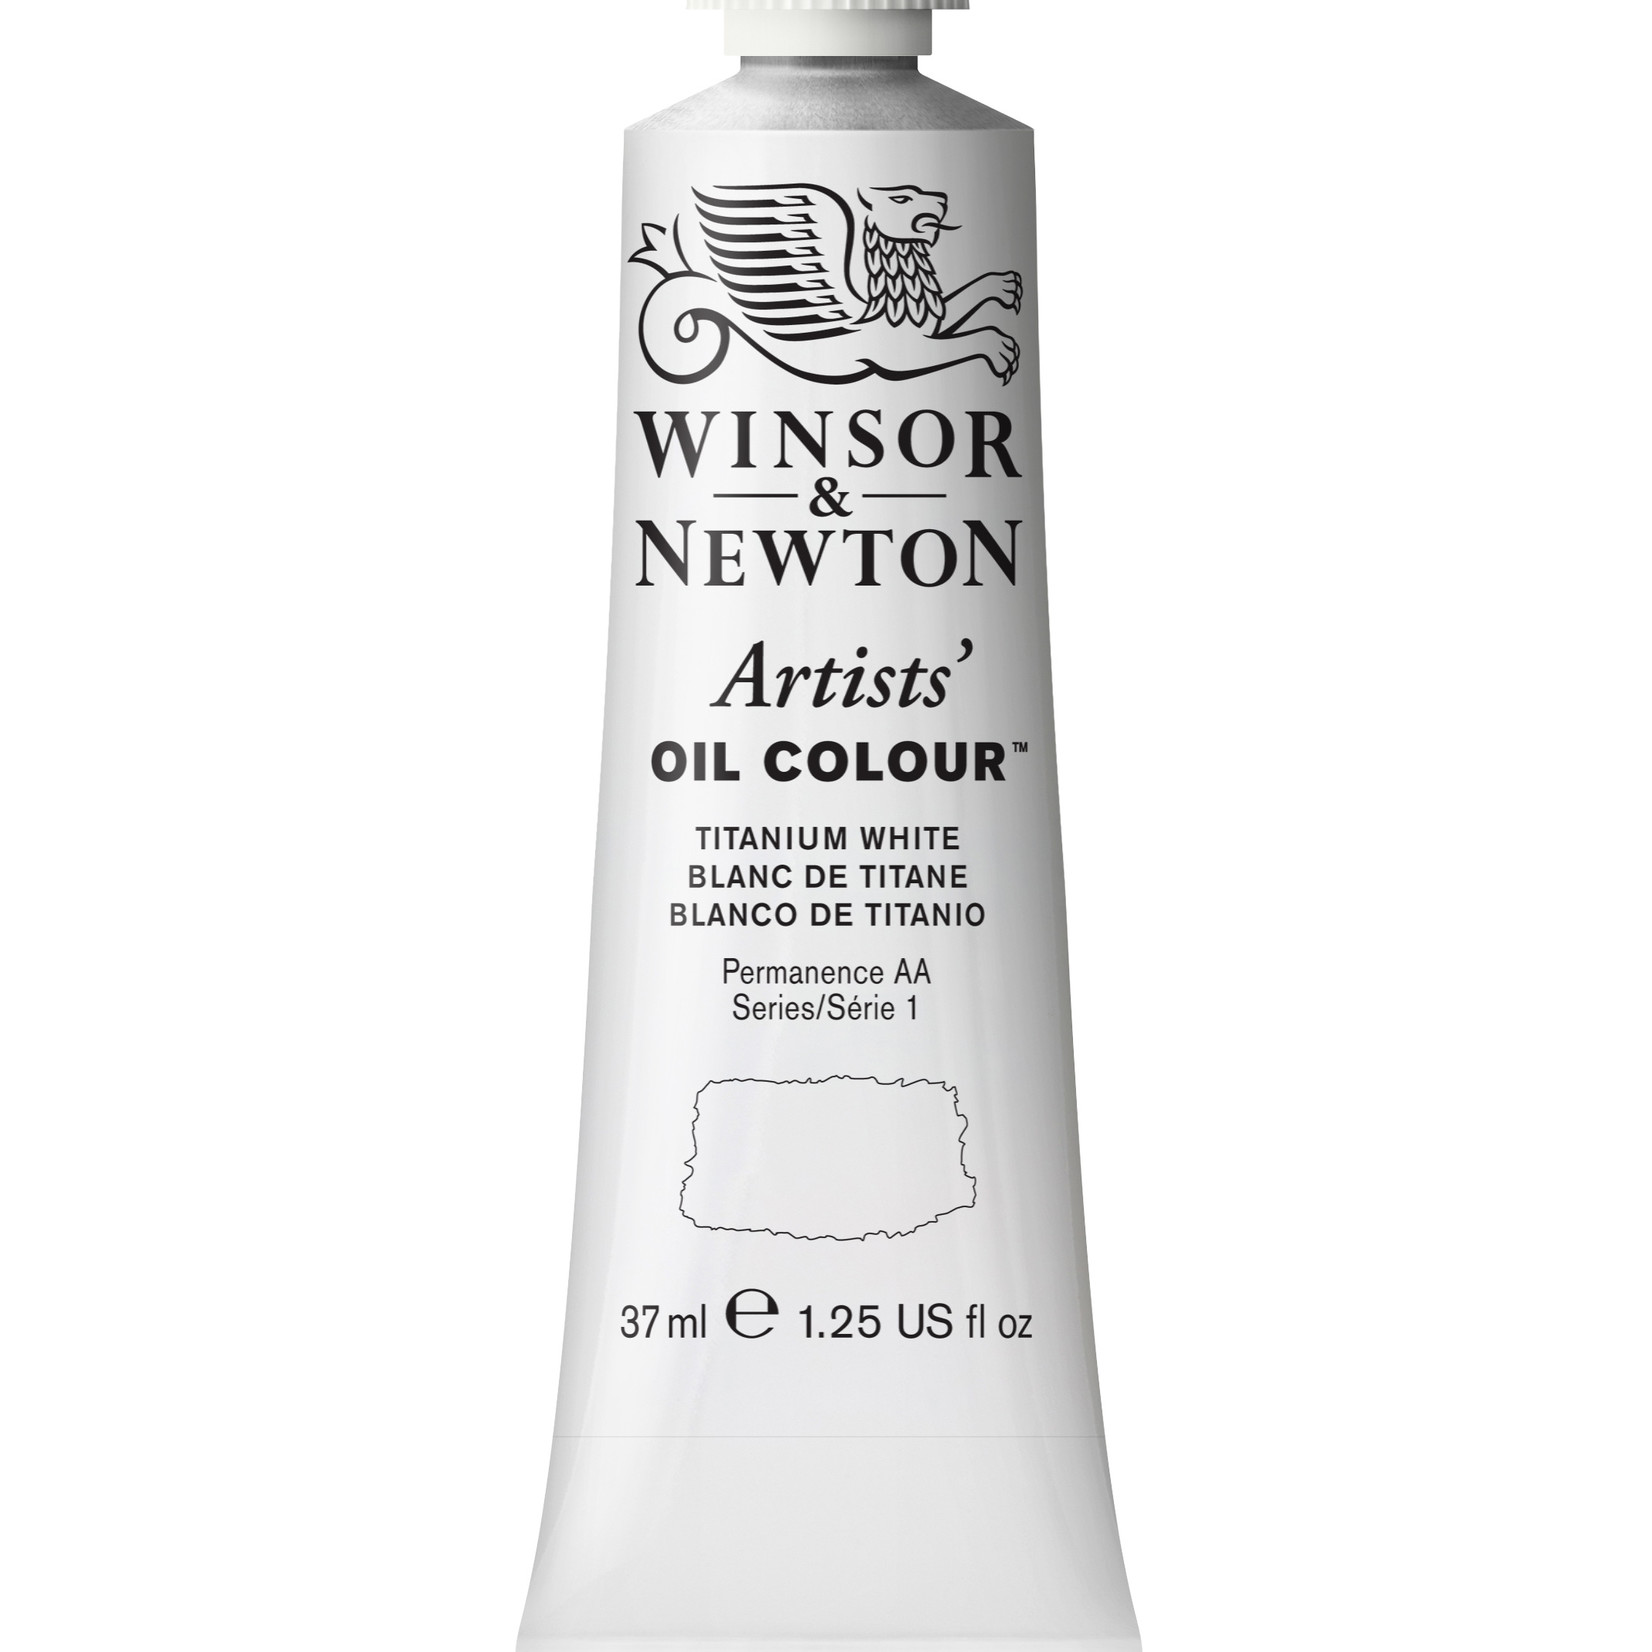 WINSOR & NEWTON ARTISTS' OIL 37ML TITANIUM WHITE